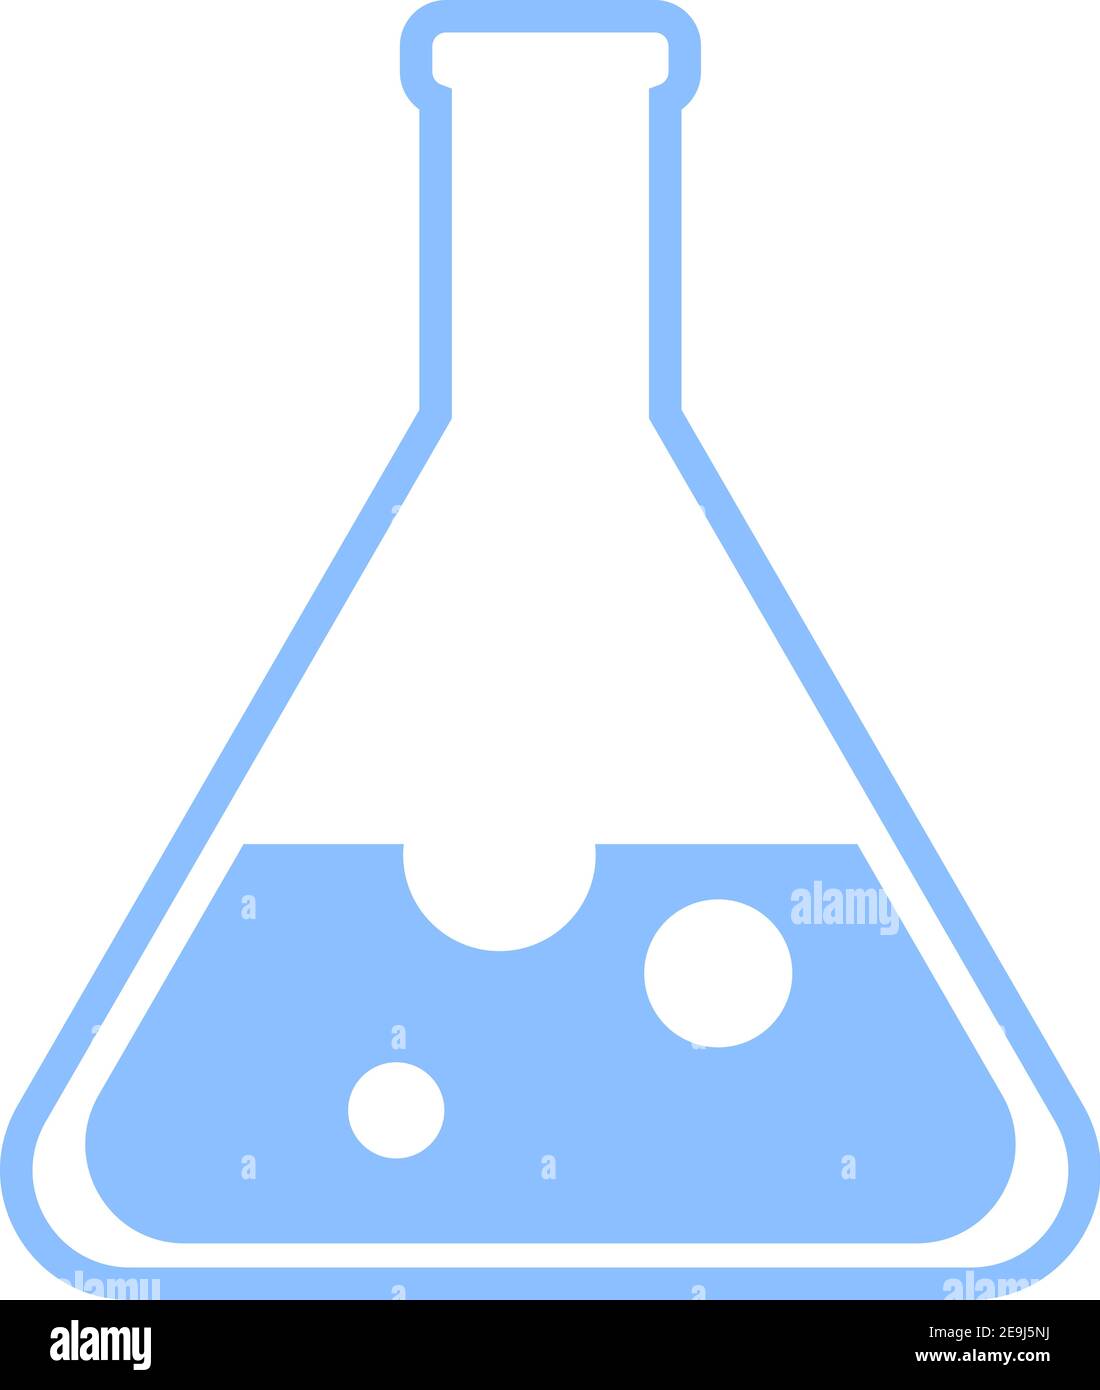 Chemical bottle, illustration, vector on white background. Stock Vector